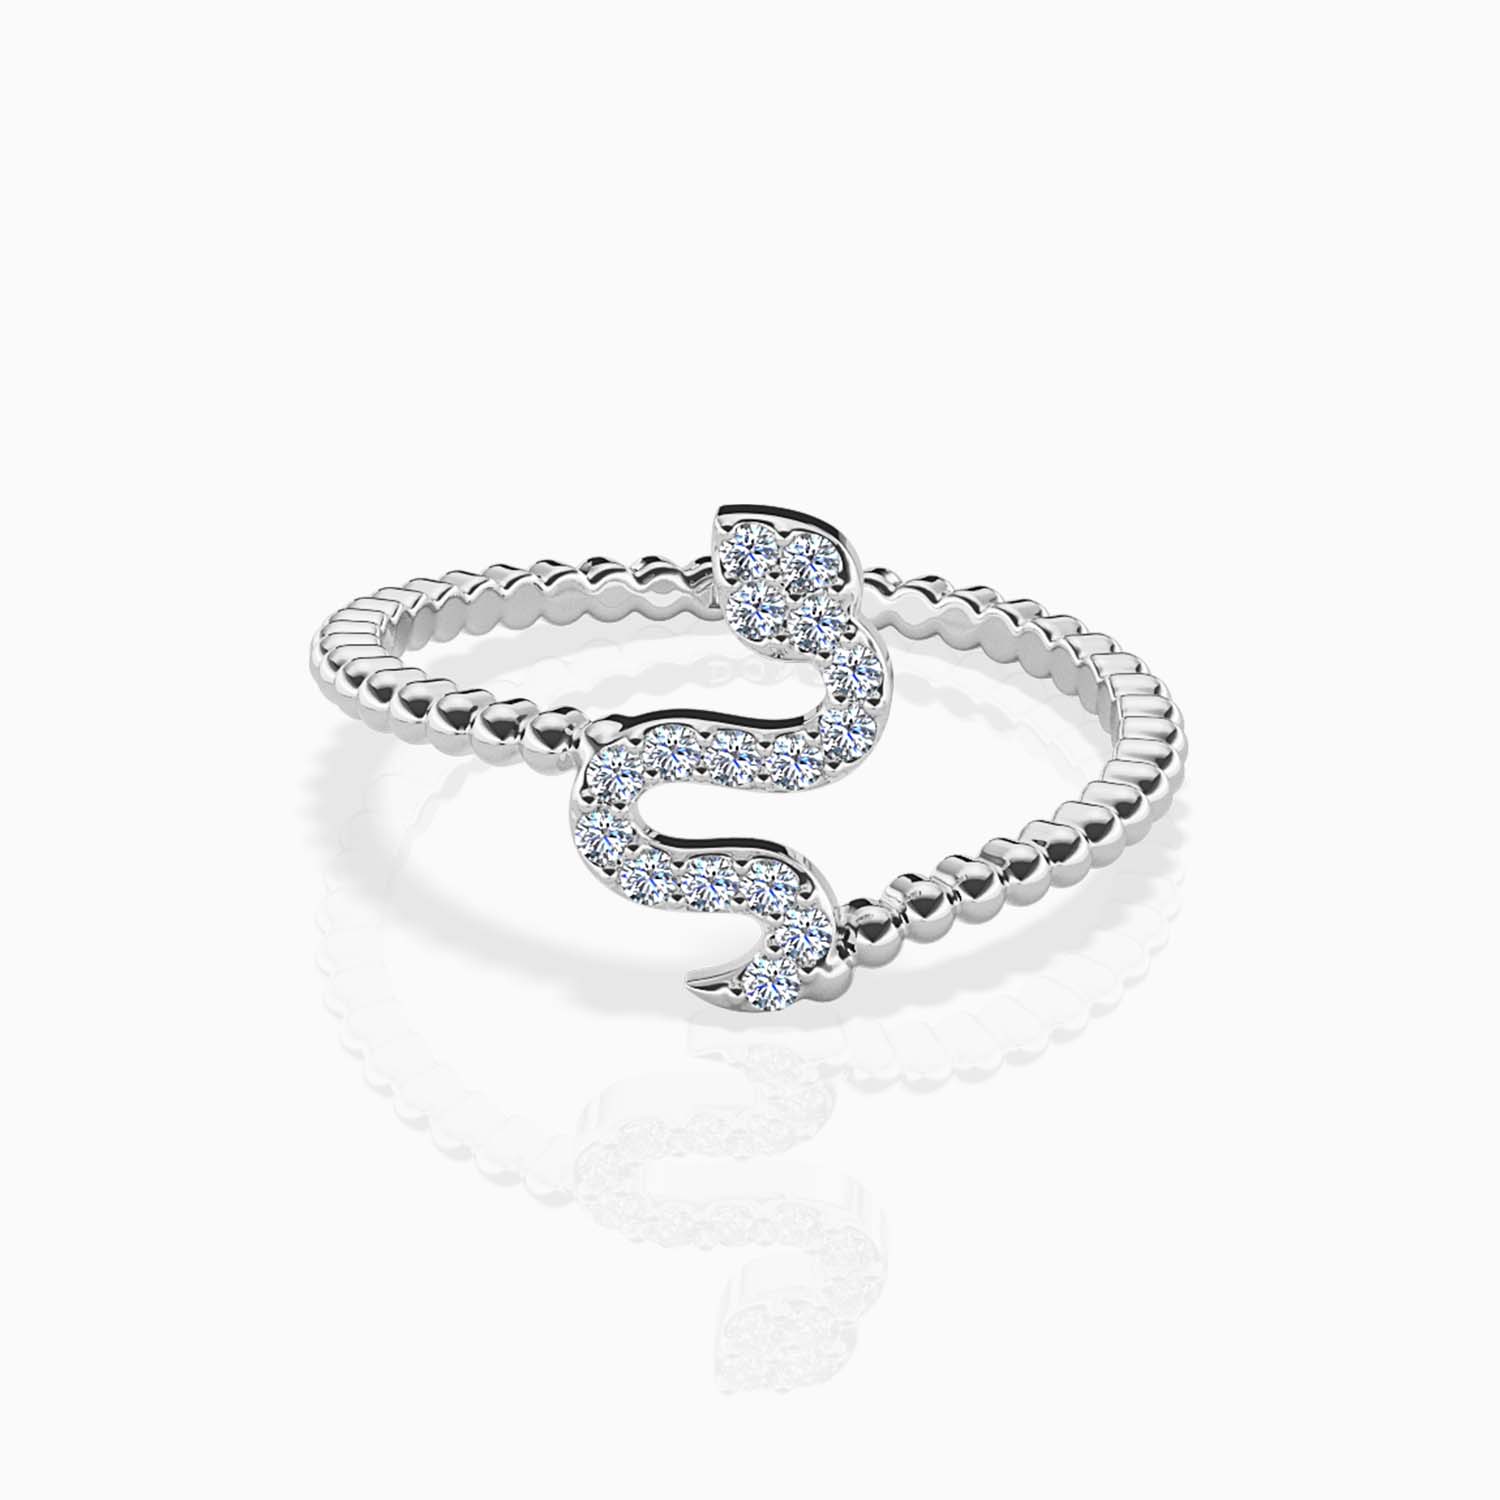 Size 5 pave stone snake ring | Snake ring, Pandora charm bracelet, Jewelry